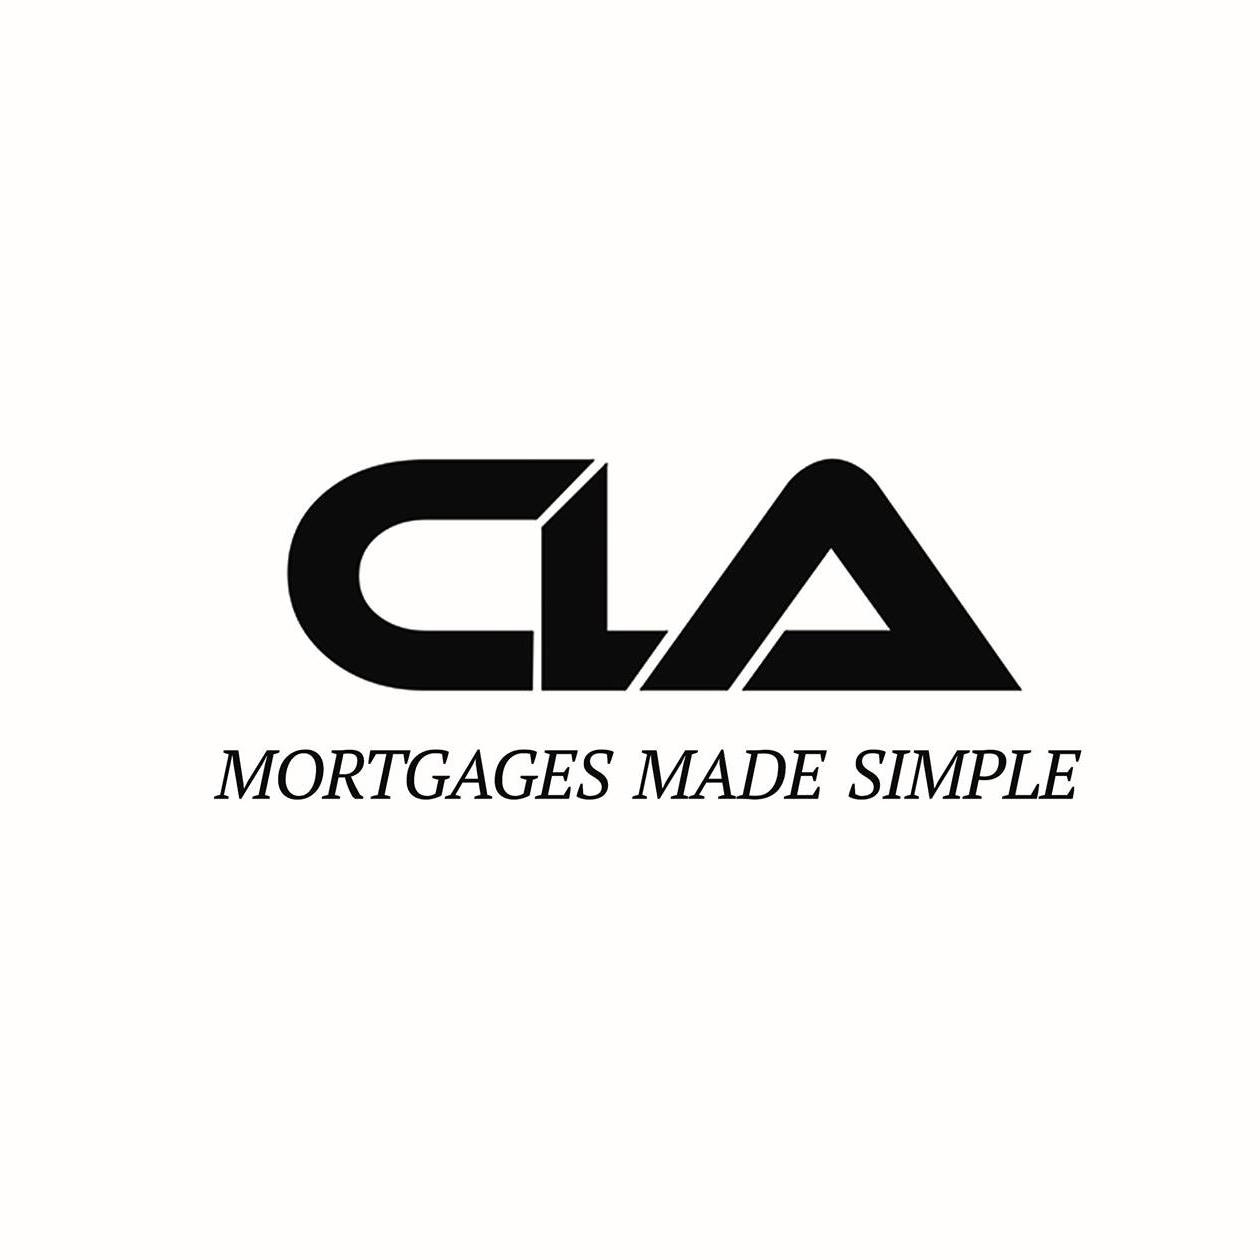 California Loan Associates